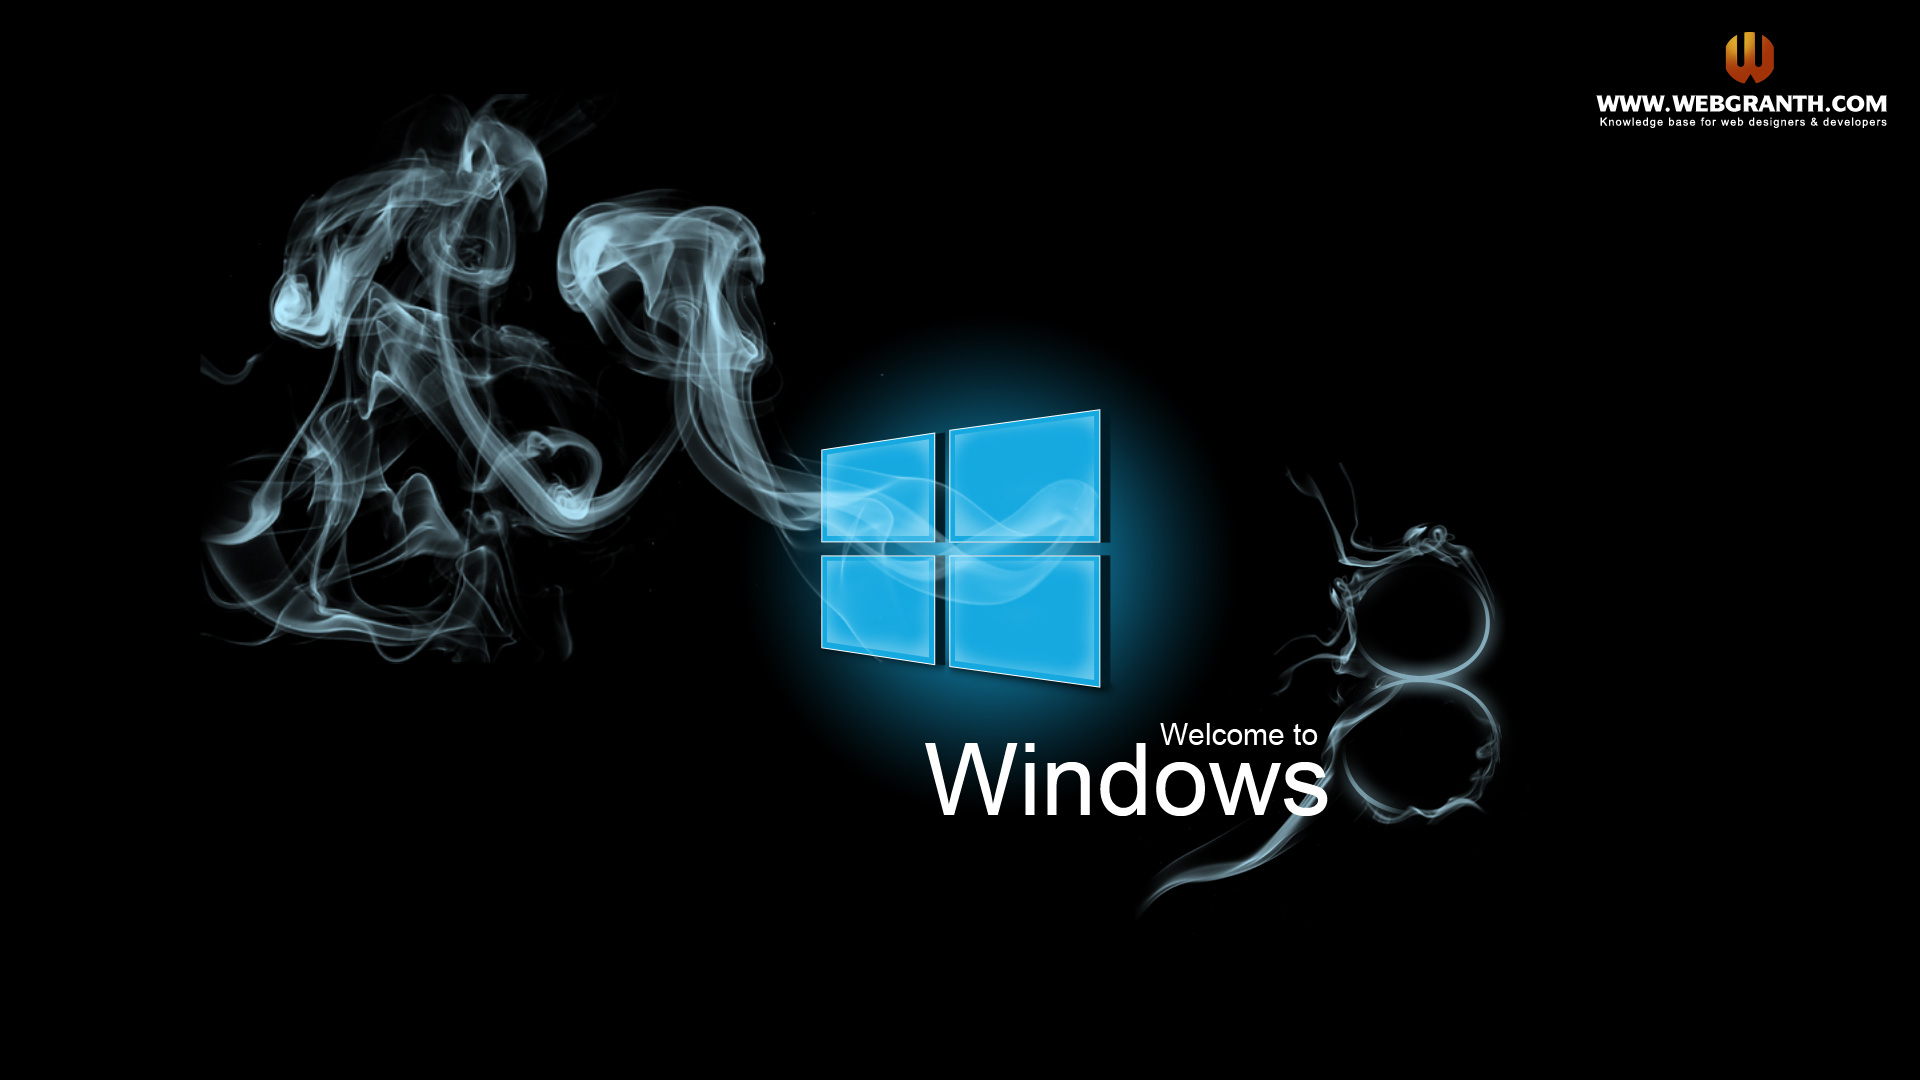 Windows 8 không chỉ có khả năng hoạt động mạnh mẽ mà còn được trang trí bởi những video hình nền vô cùng ấn tượng. Đến với chúng tôi và tận hưởng những video hình nền Windows 8 tuyệt đẹp, giúp cho máy tính của bạn trở nên thật sự độc đáo và nổi bật.